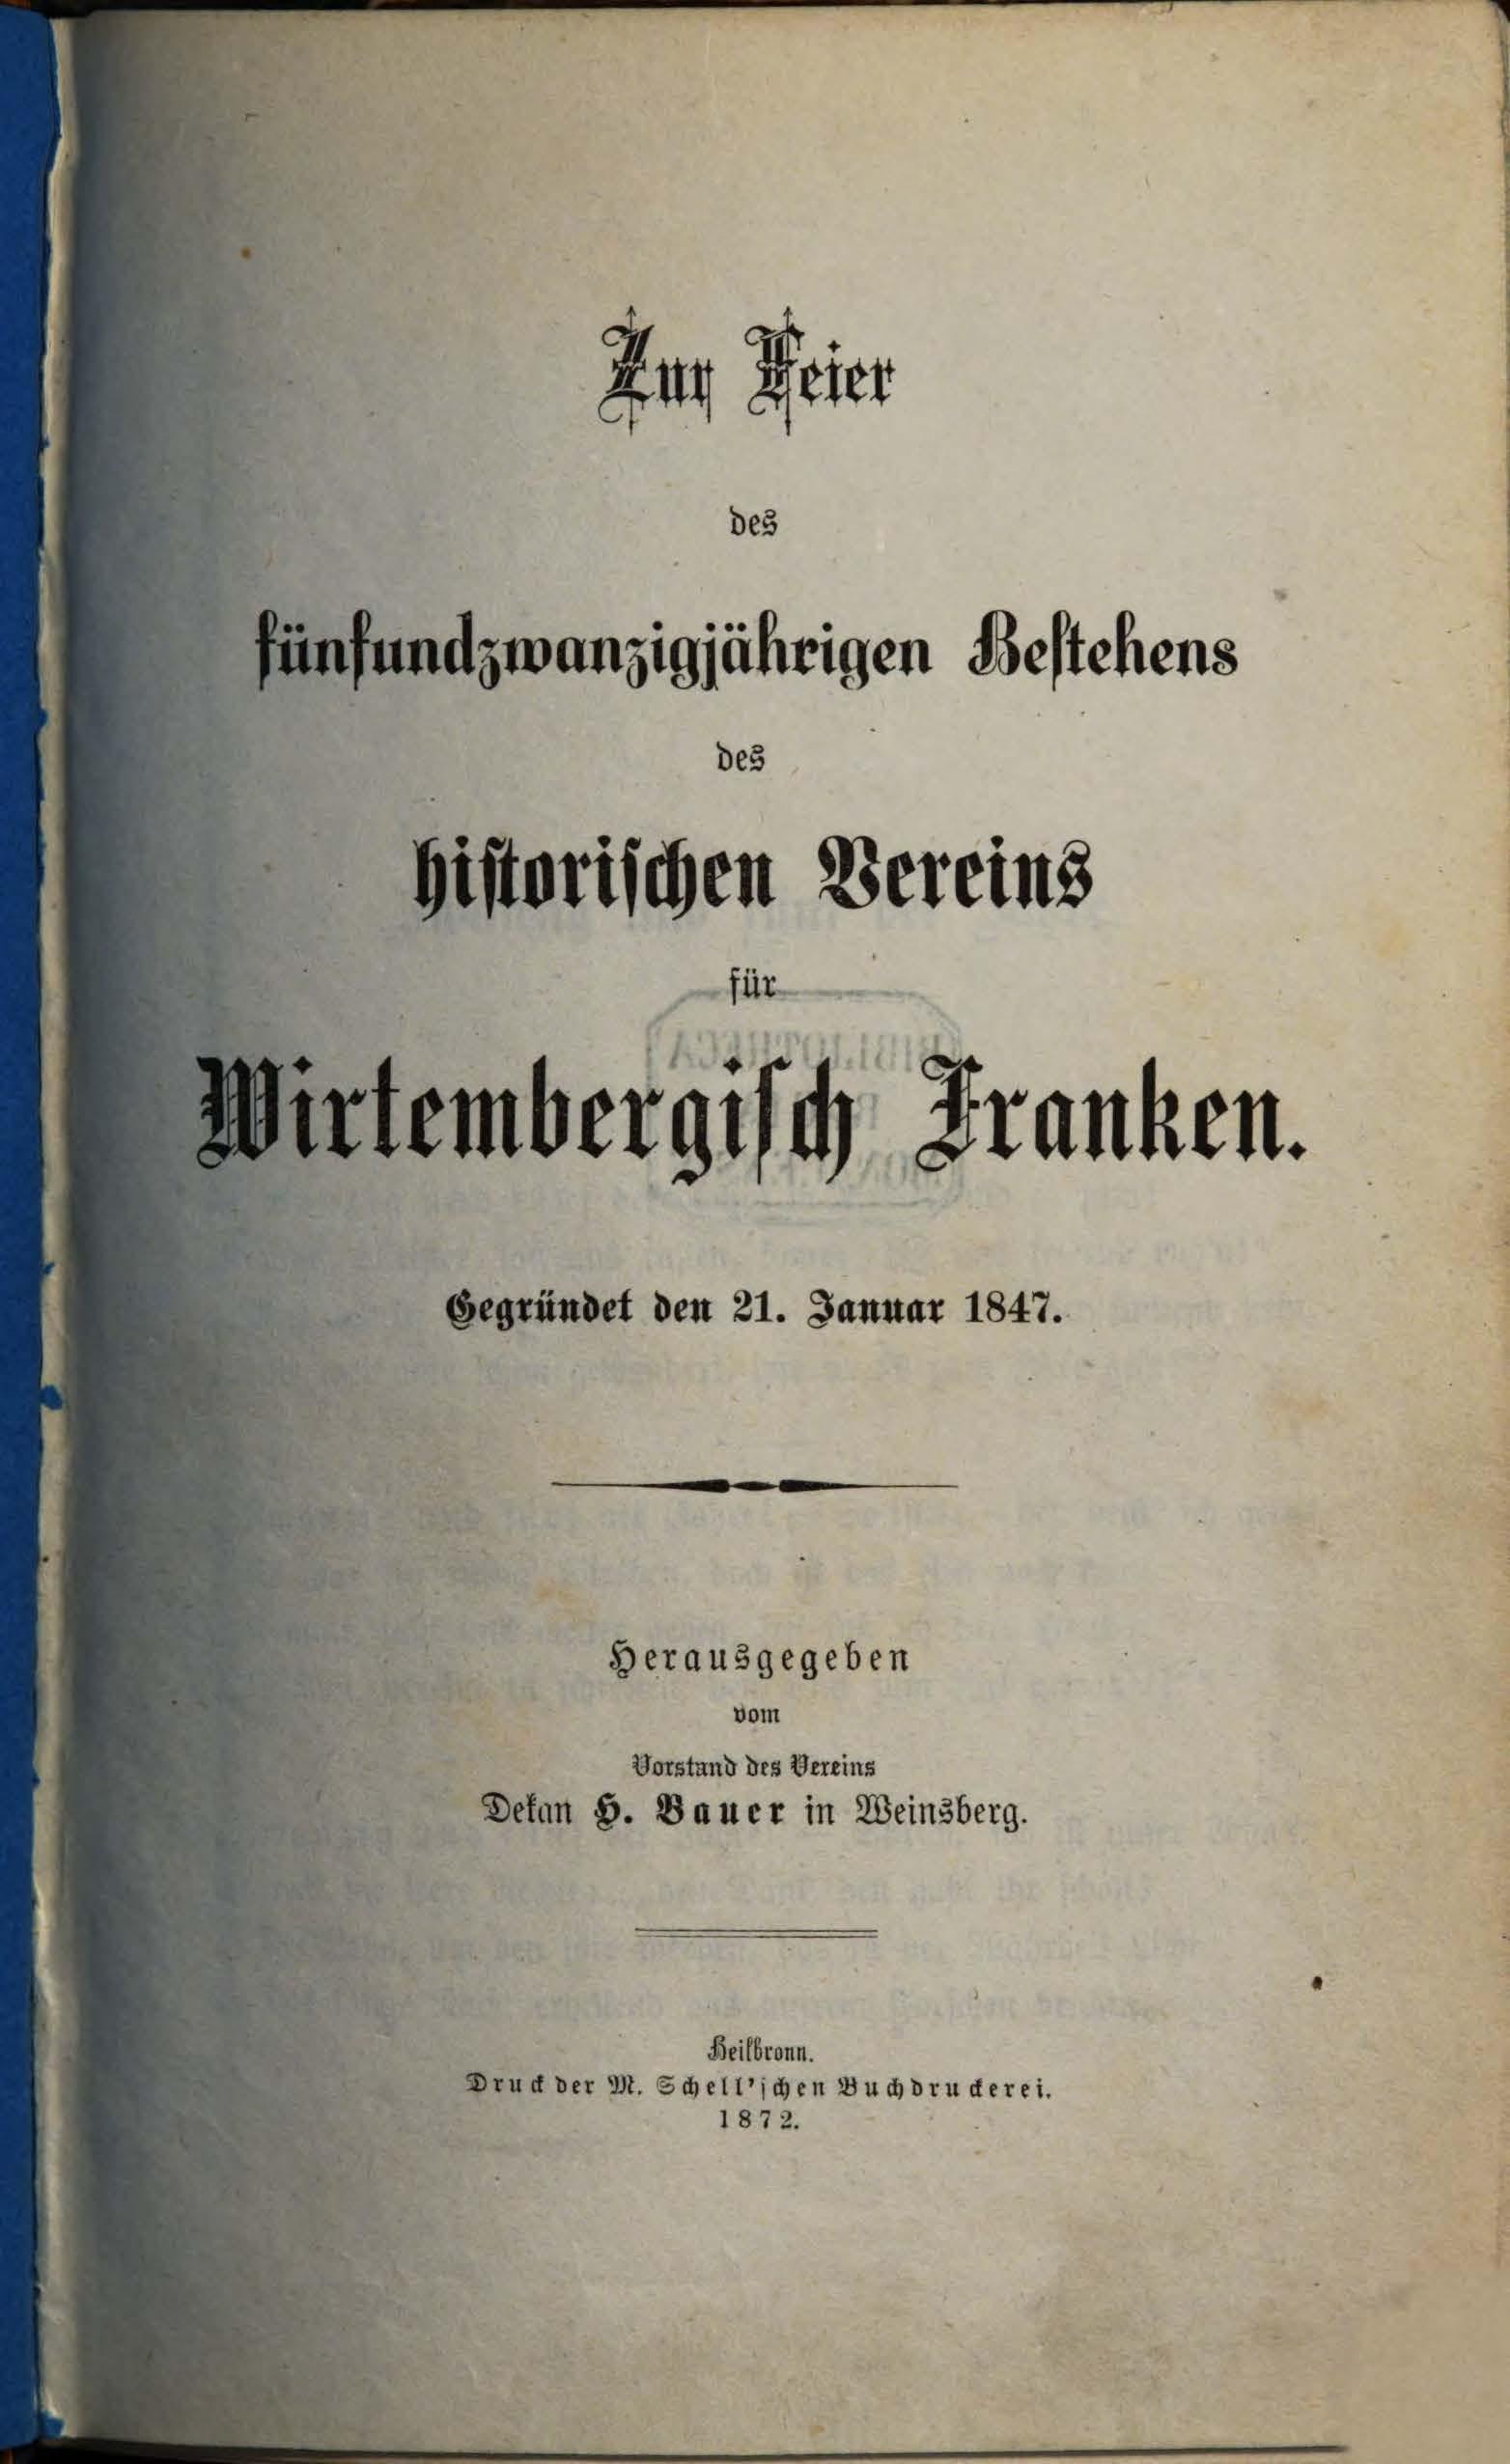 Cover Zur Feier des fünfundzwanzigjälhrigen Bestehens des historischen Vereins für das Wirtembergisch Franken